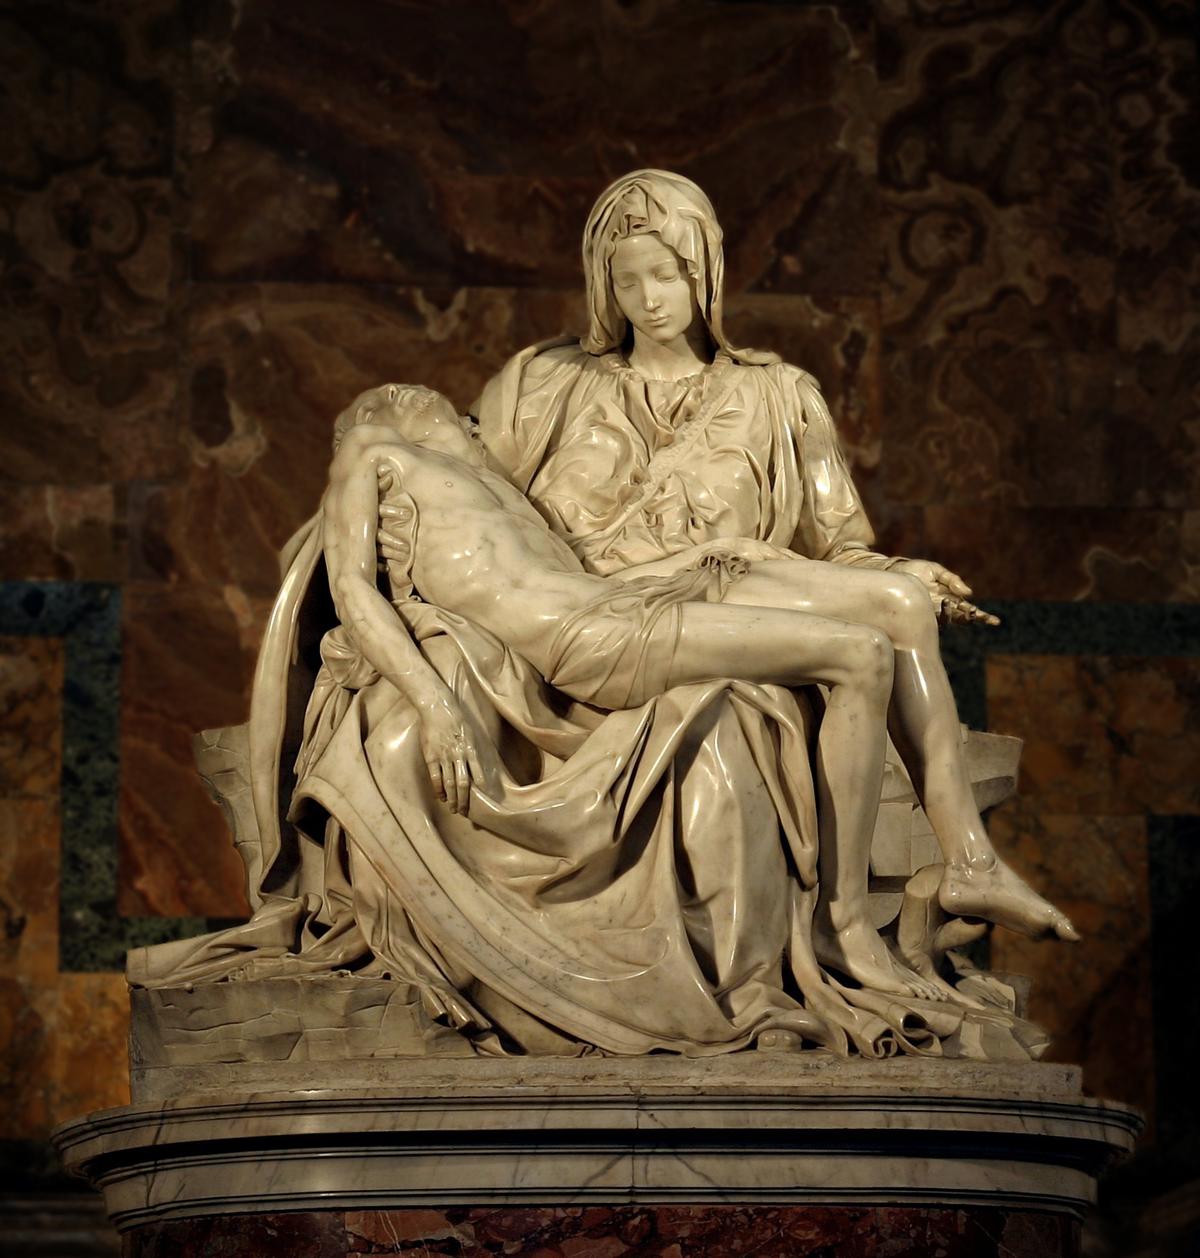 "Pietà" by Michelangelo, 1497. Marble. Saint Peters Basilica, Rome. (public domain)